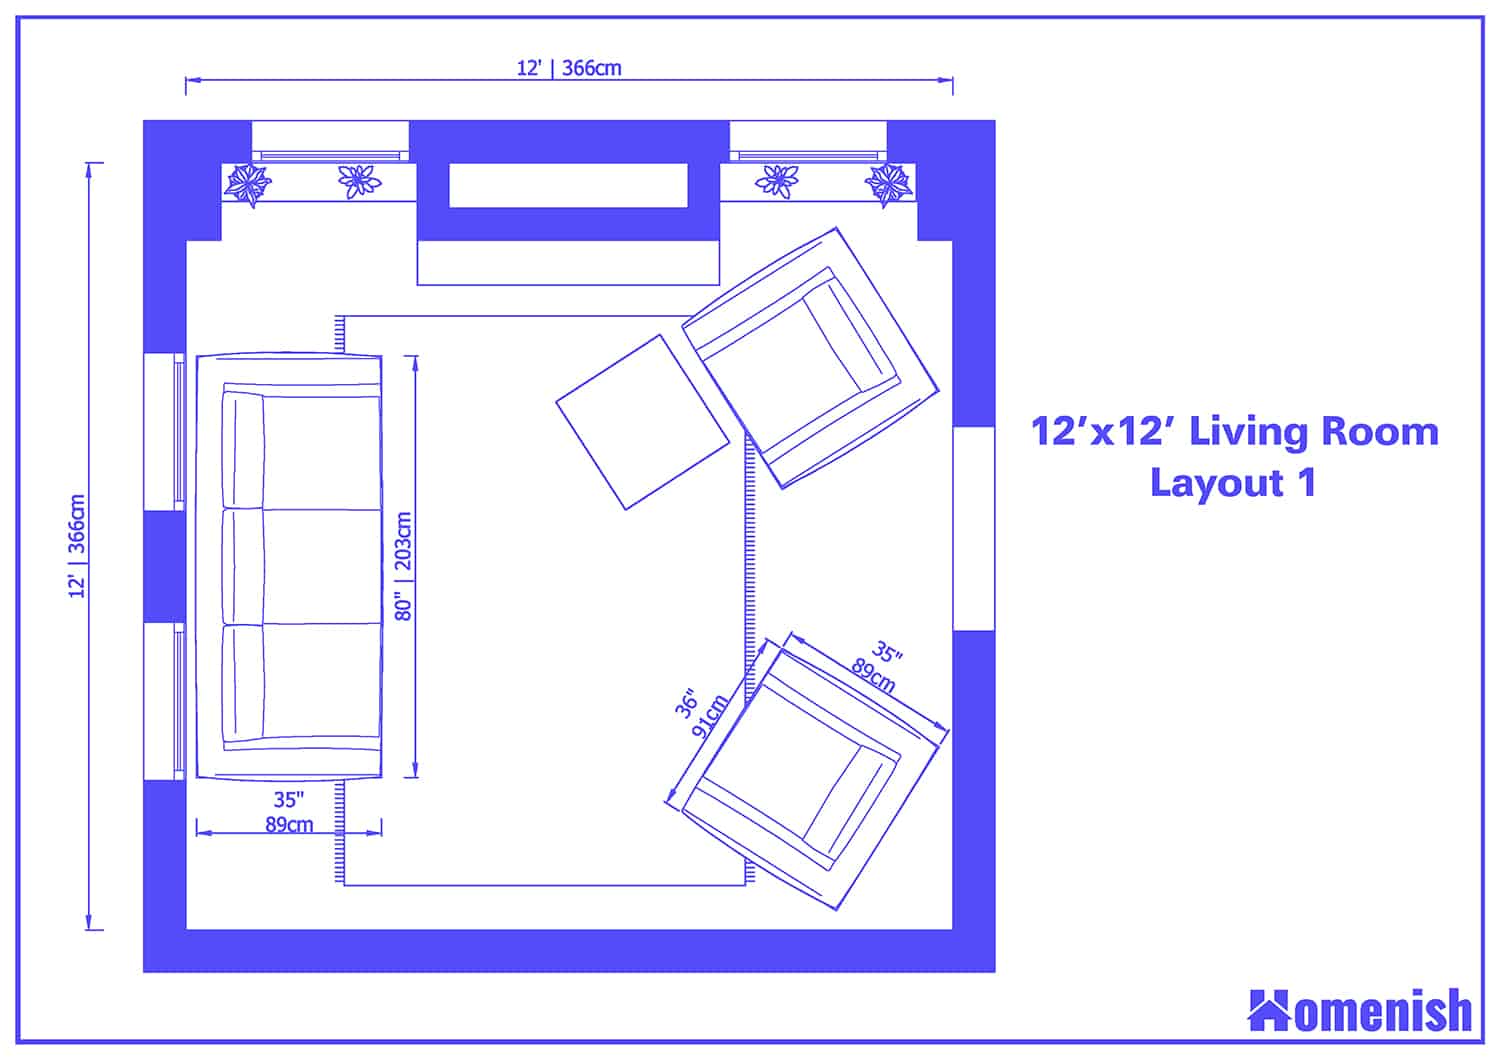 Floor Plan 12x12 Living Room Layout